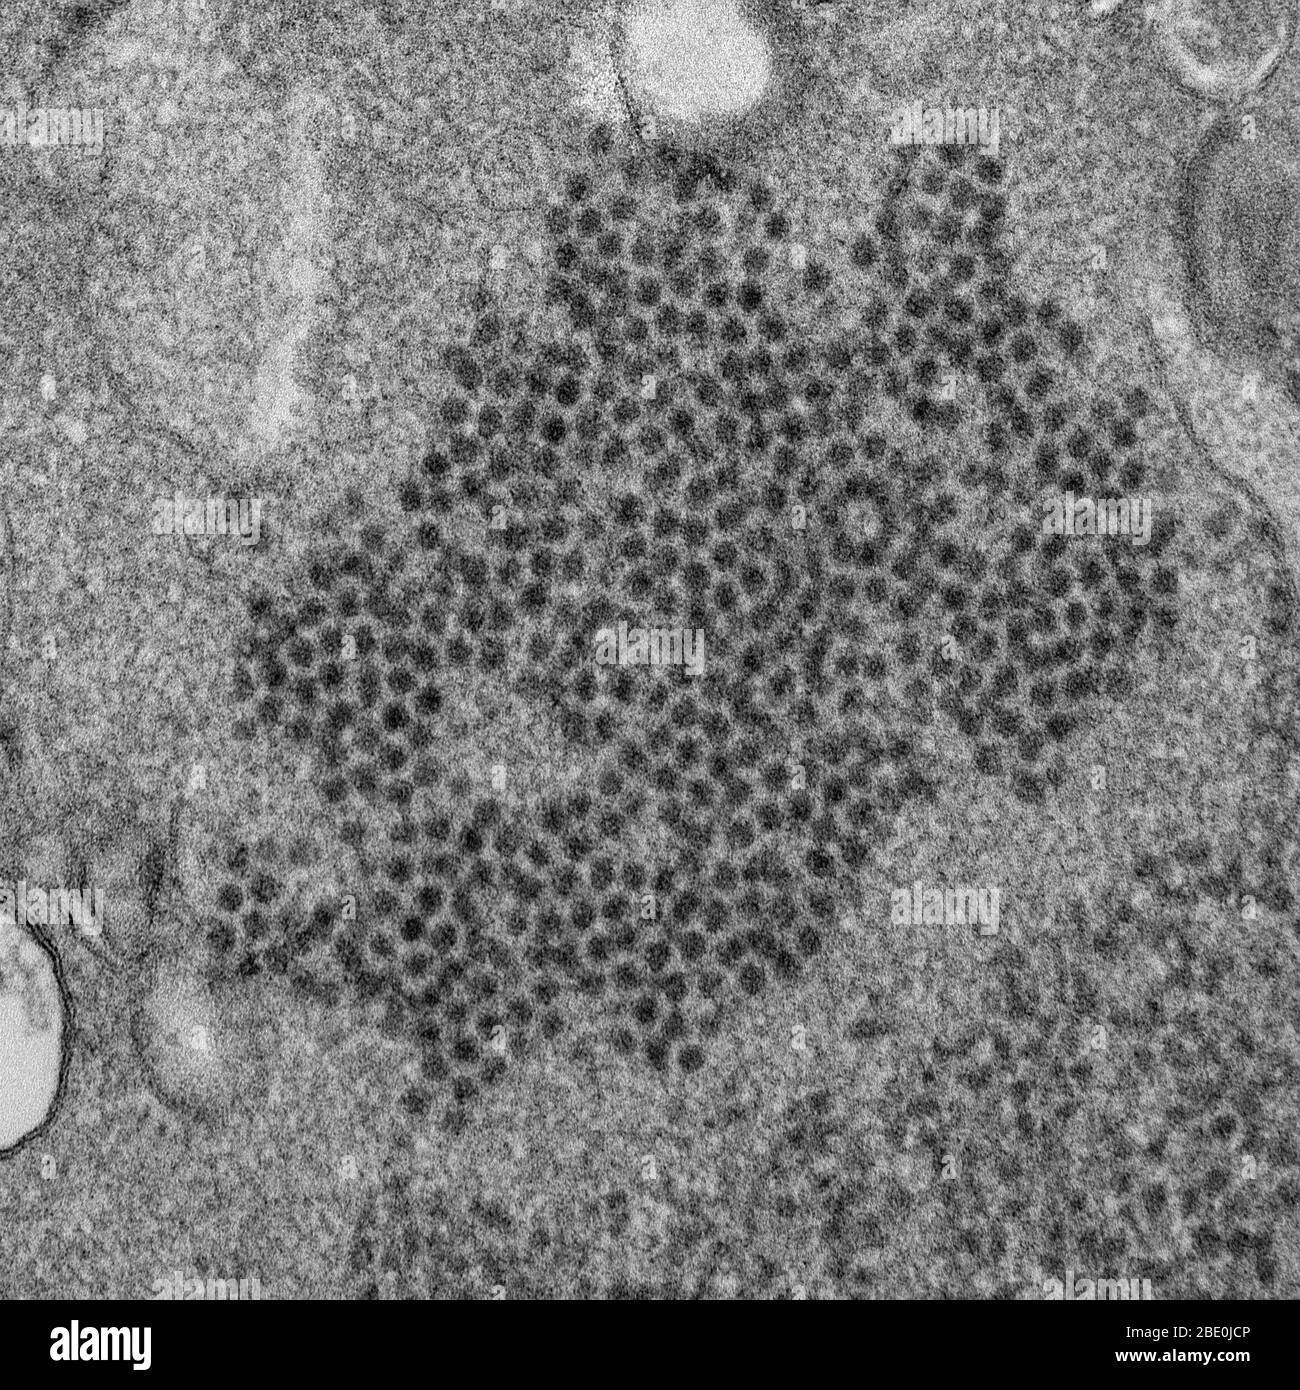 Le micrographe électronique de transmission (TEM) révèle de nombreuses visions de l'entérovirus 68 en forme de sphéroïde (EV68, EV- , HEV68) qui font partie de la famille des Picornaviridae, un entérovirus. Isolé pour la première fois en Californie en 1962 et considéré comme rare, il a été sur un essor mondial au XXIe siècle. Avec une certaine incertitude, il a été impliqué dans des cas de trouble semblable à la poliomyélite, appelé myélite aiguë flaccique. La myélite aiguë flaccique (AFM) est une maladie neurologique d'apparition soudaine chez les enfants. Il présente une faiblesse localisée des membres de cause inconnue. Entérovirus 68, qui en tant que membre de l'entrée Banque D'Images